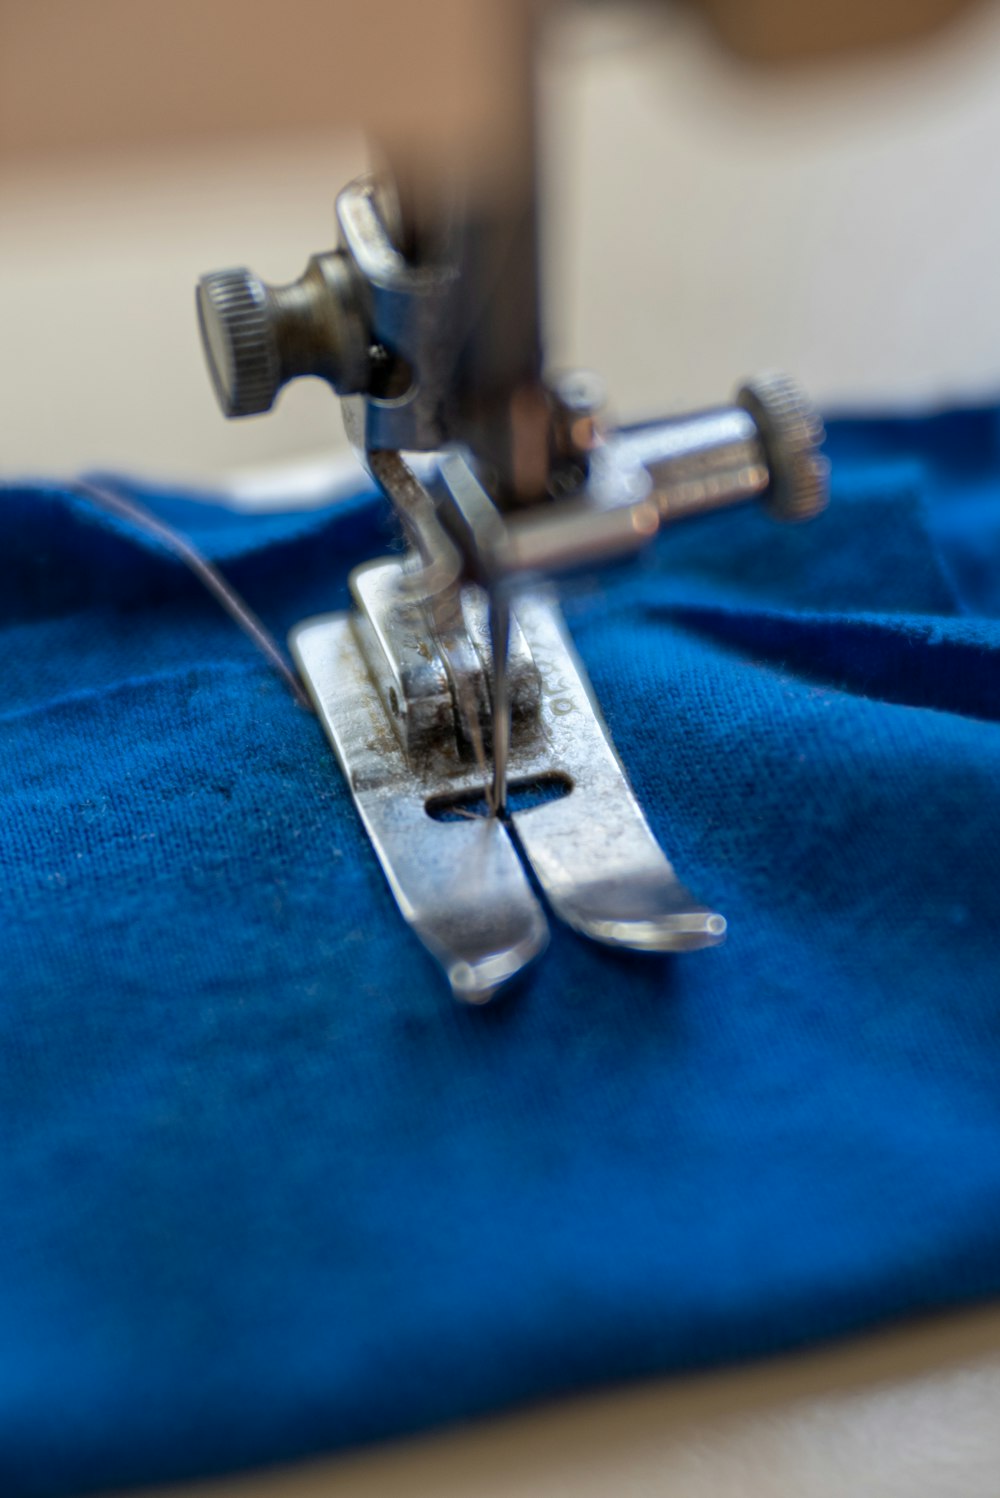 máquina de costura de prata no têxtil azul